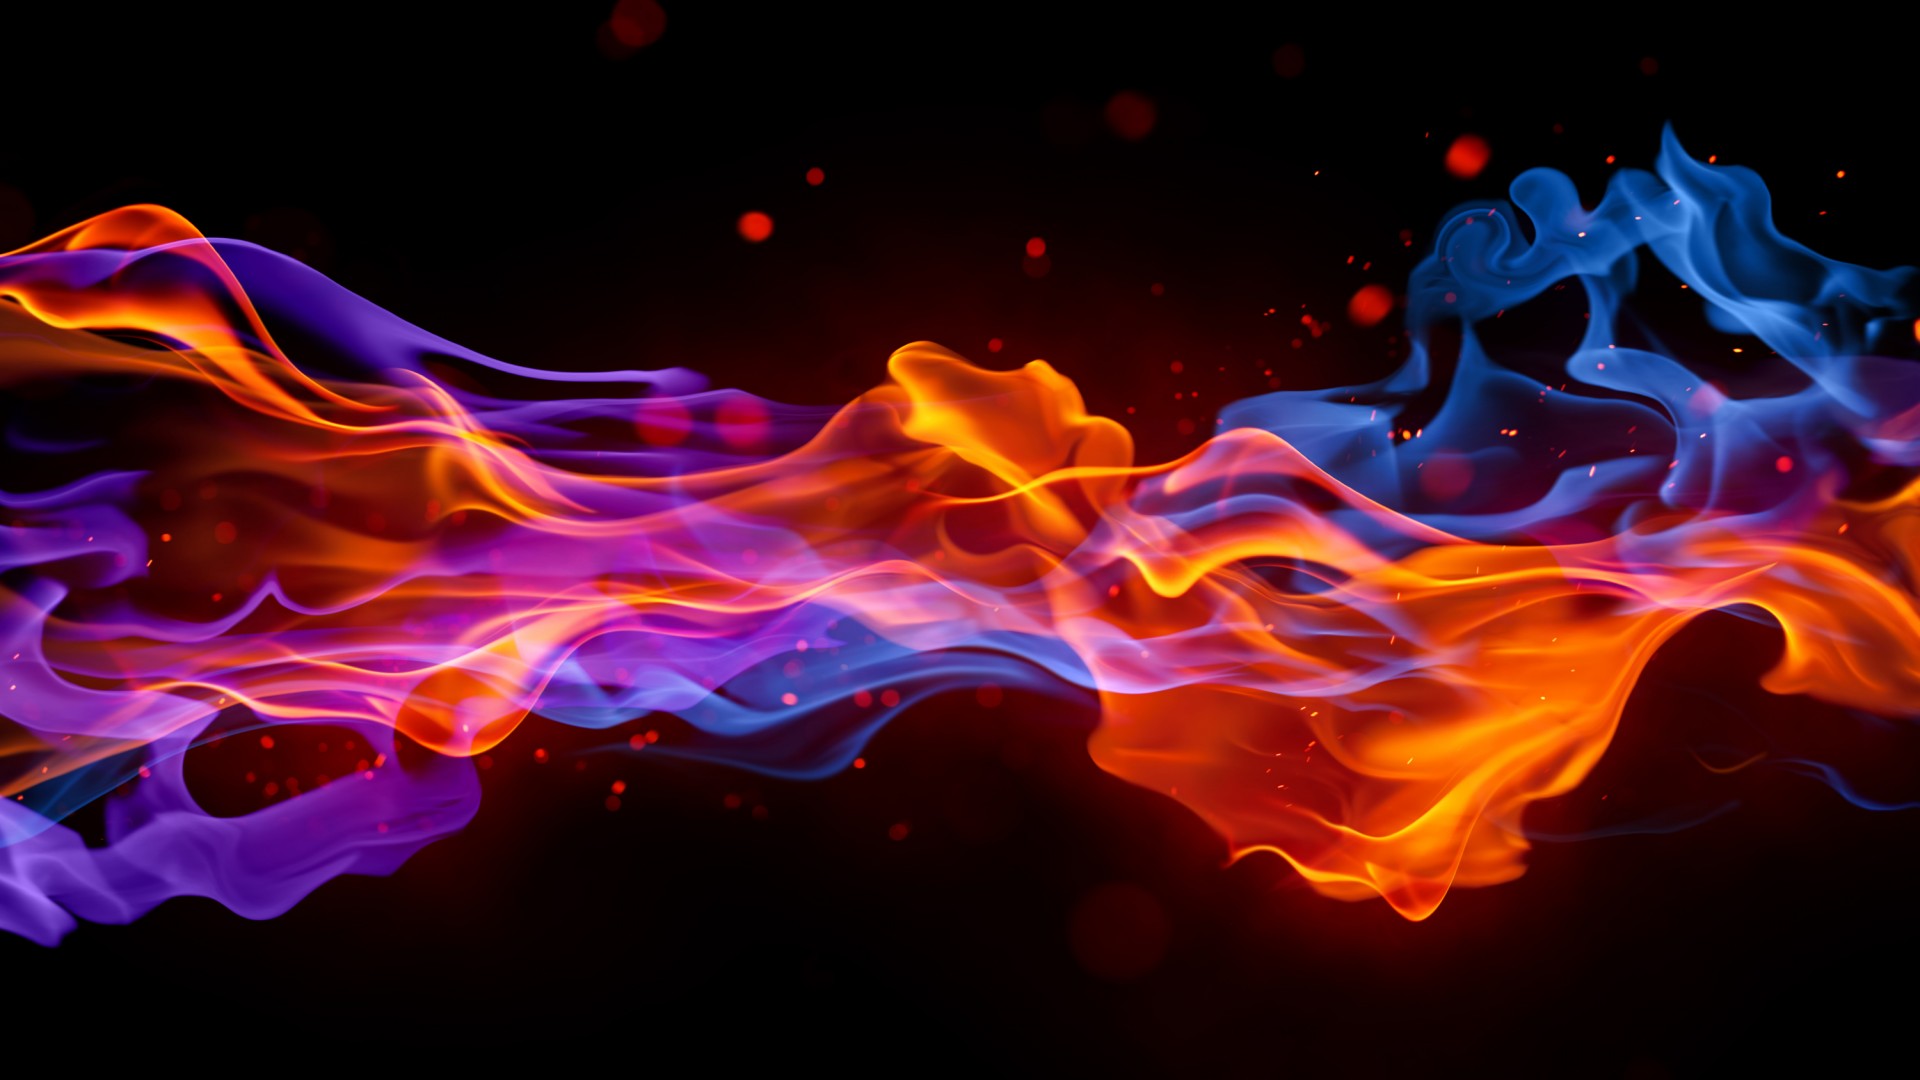 огонь, 4k, 5k, красный, голубой, розовый, фон, fire, 4k, 5k wallpaper, blue, red, violet, background (horizontal)